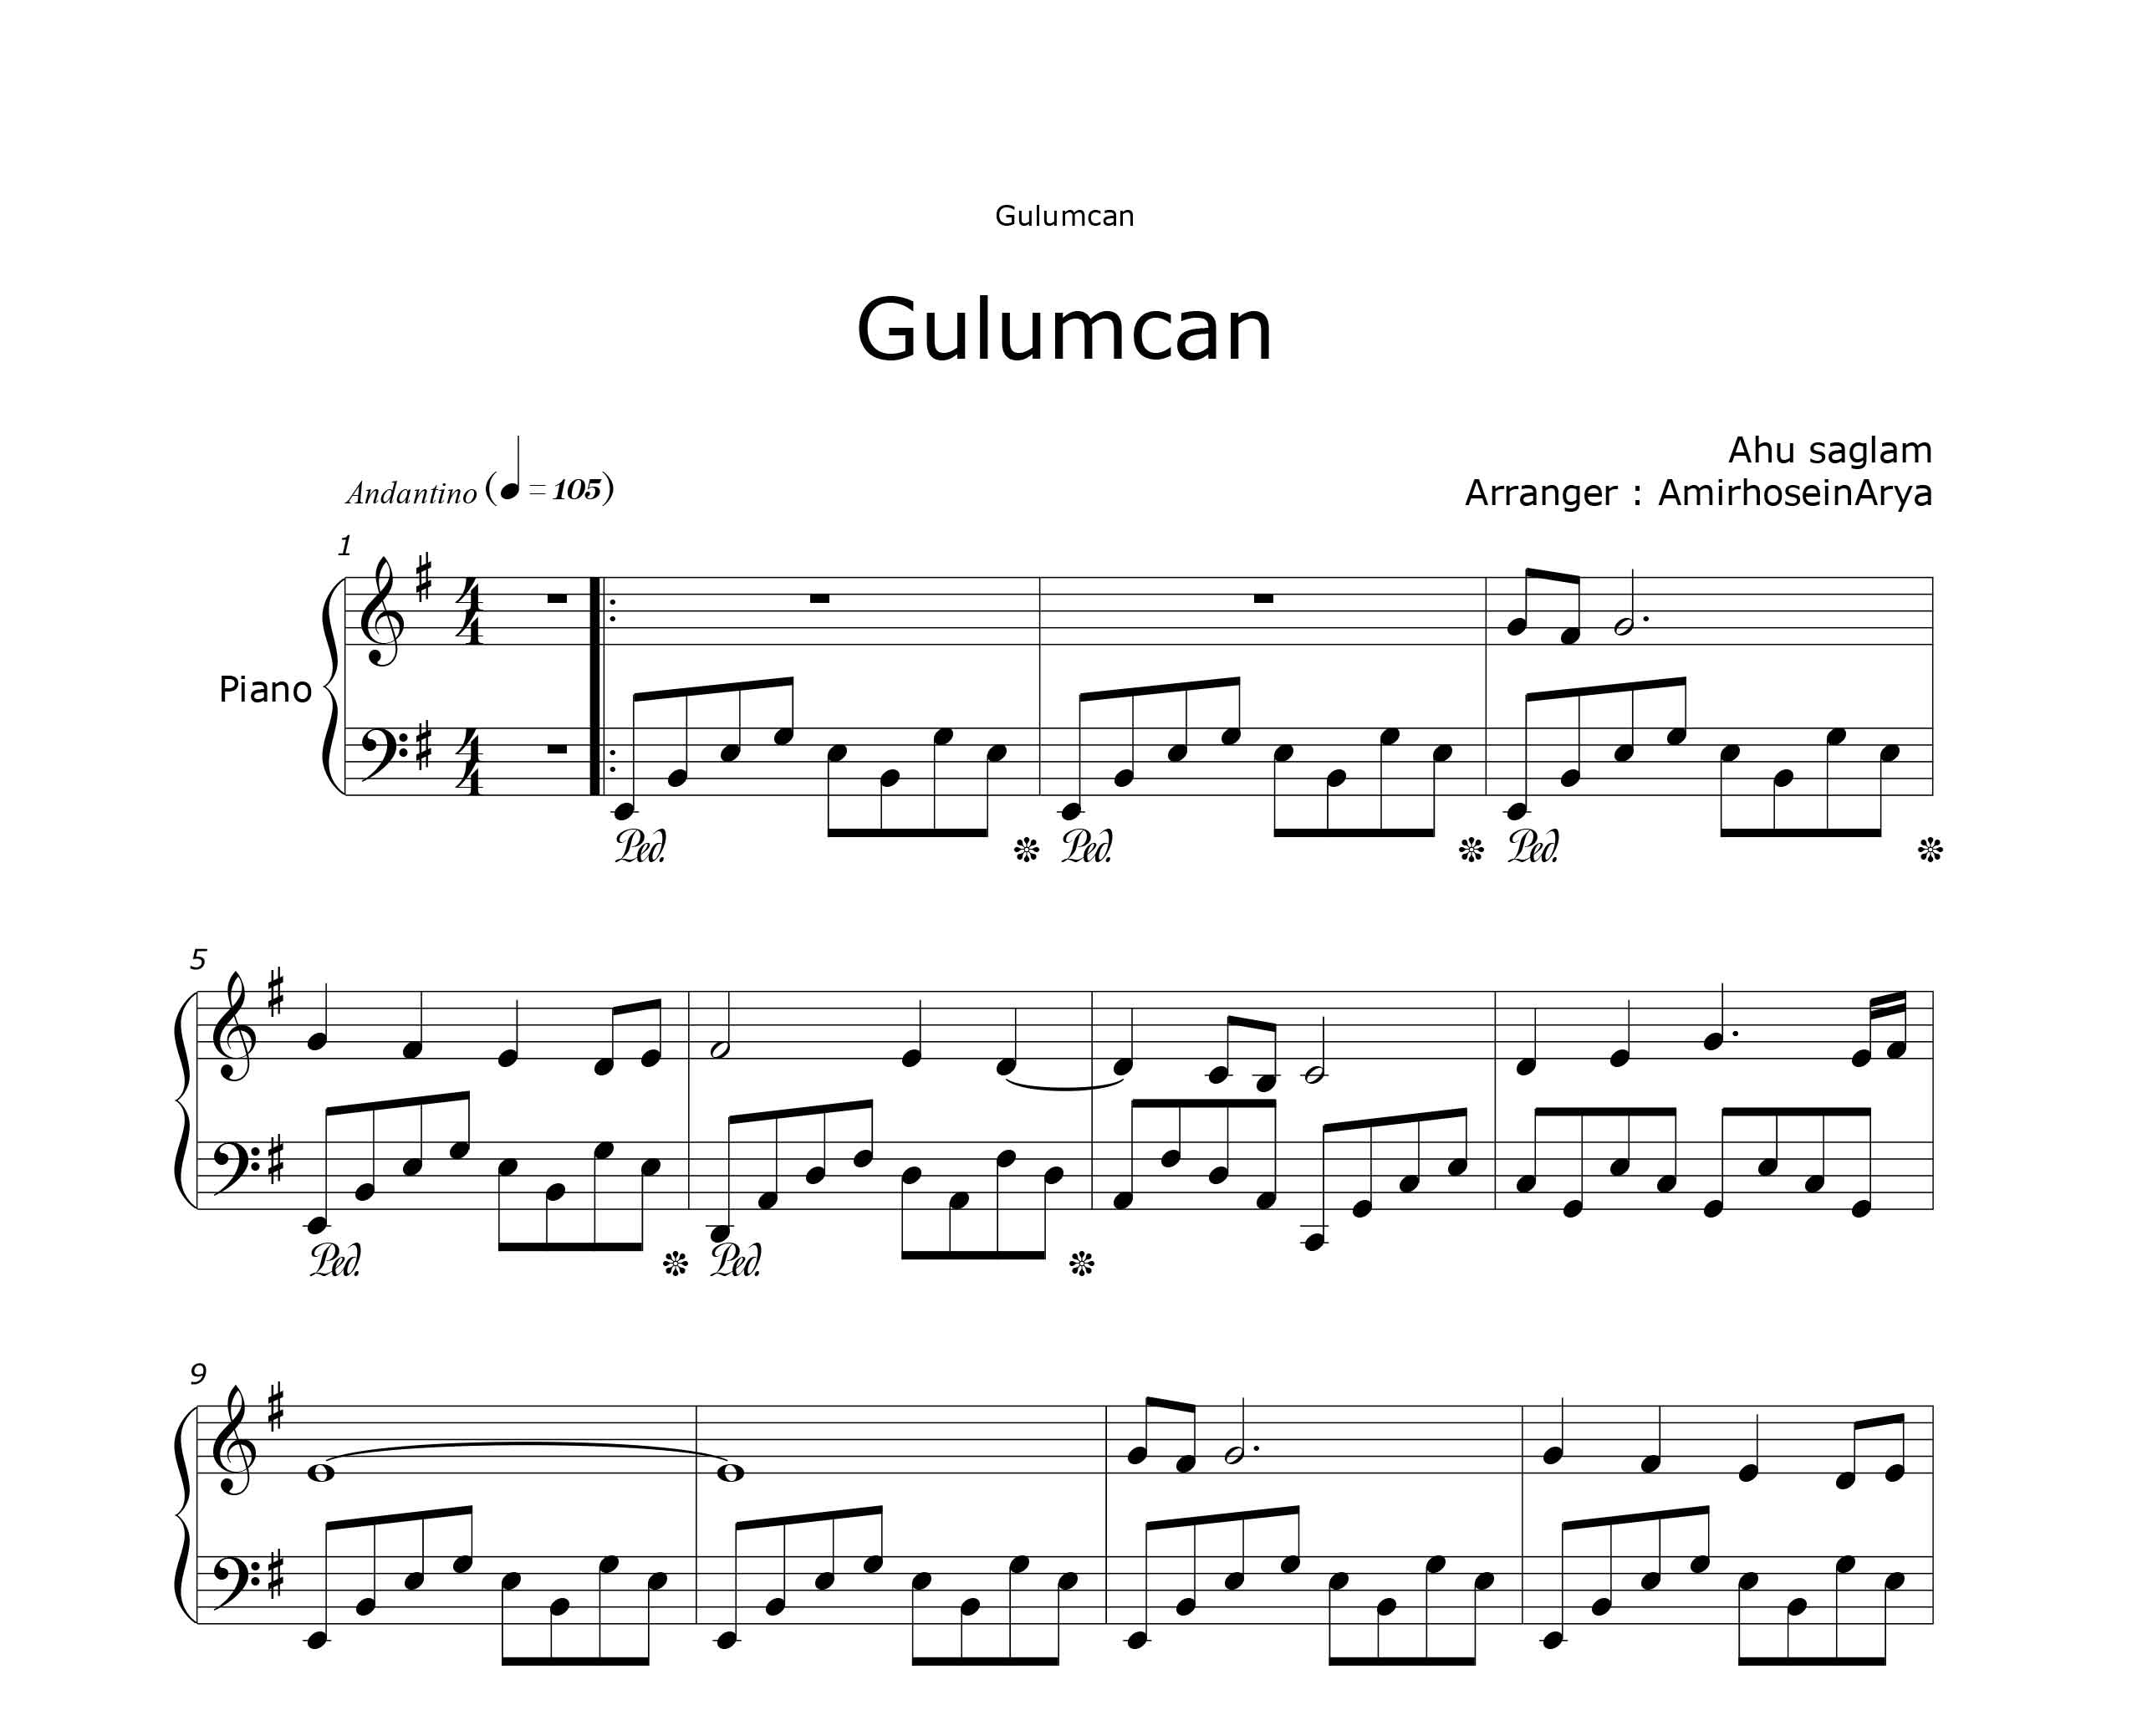 نت پیانوی Gulumcan از ahu saglam